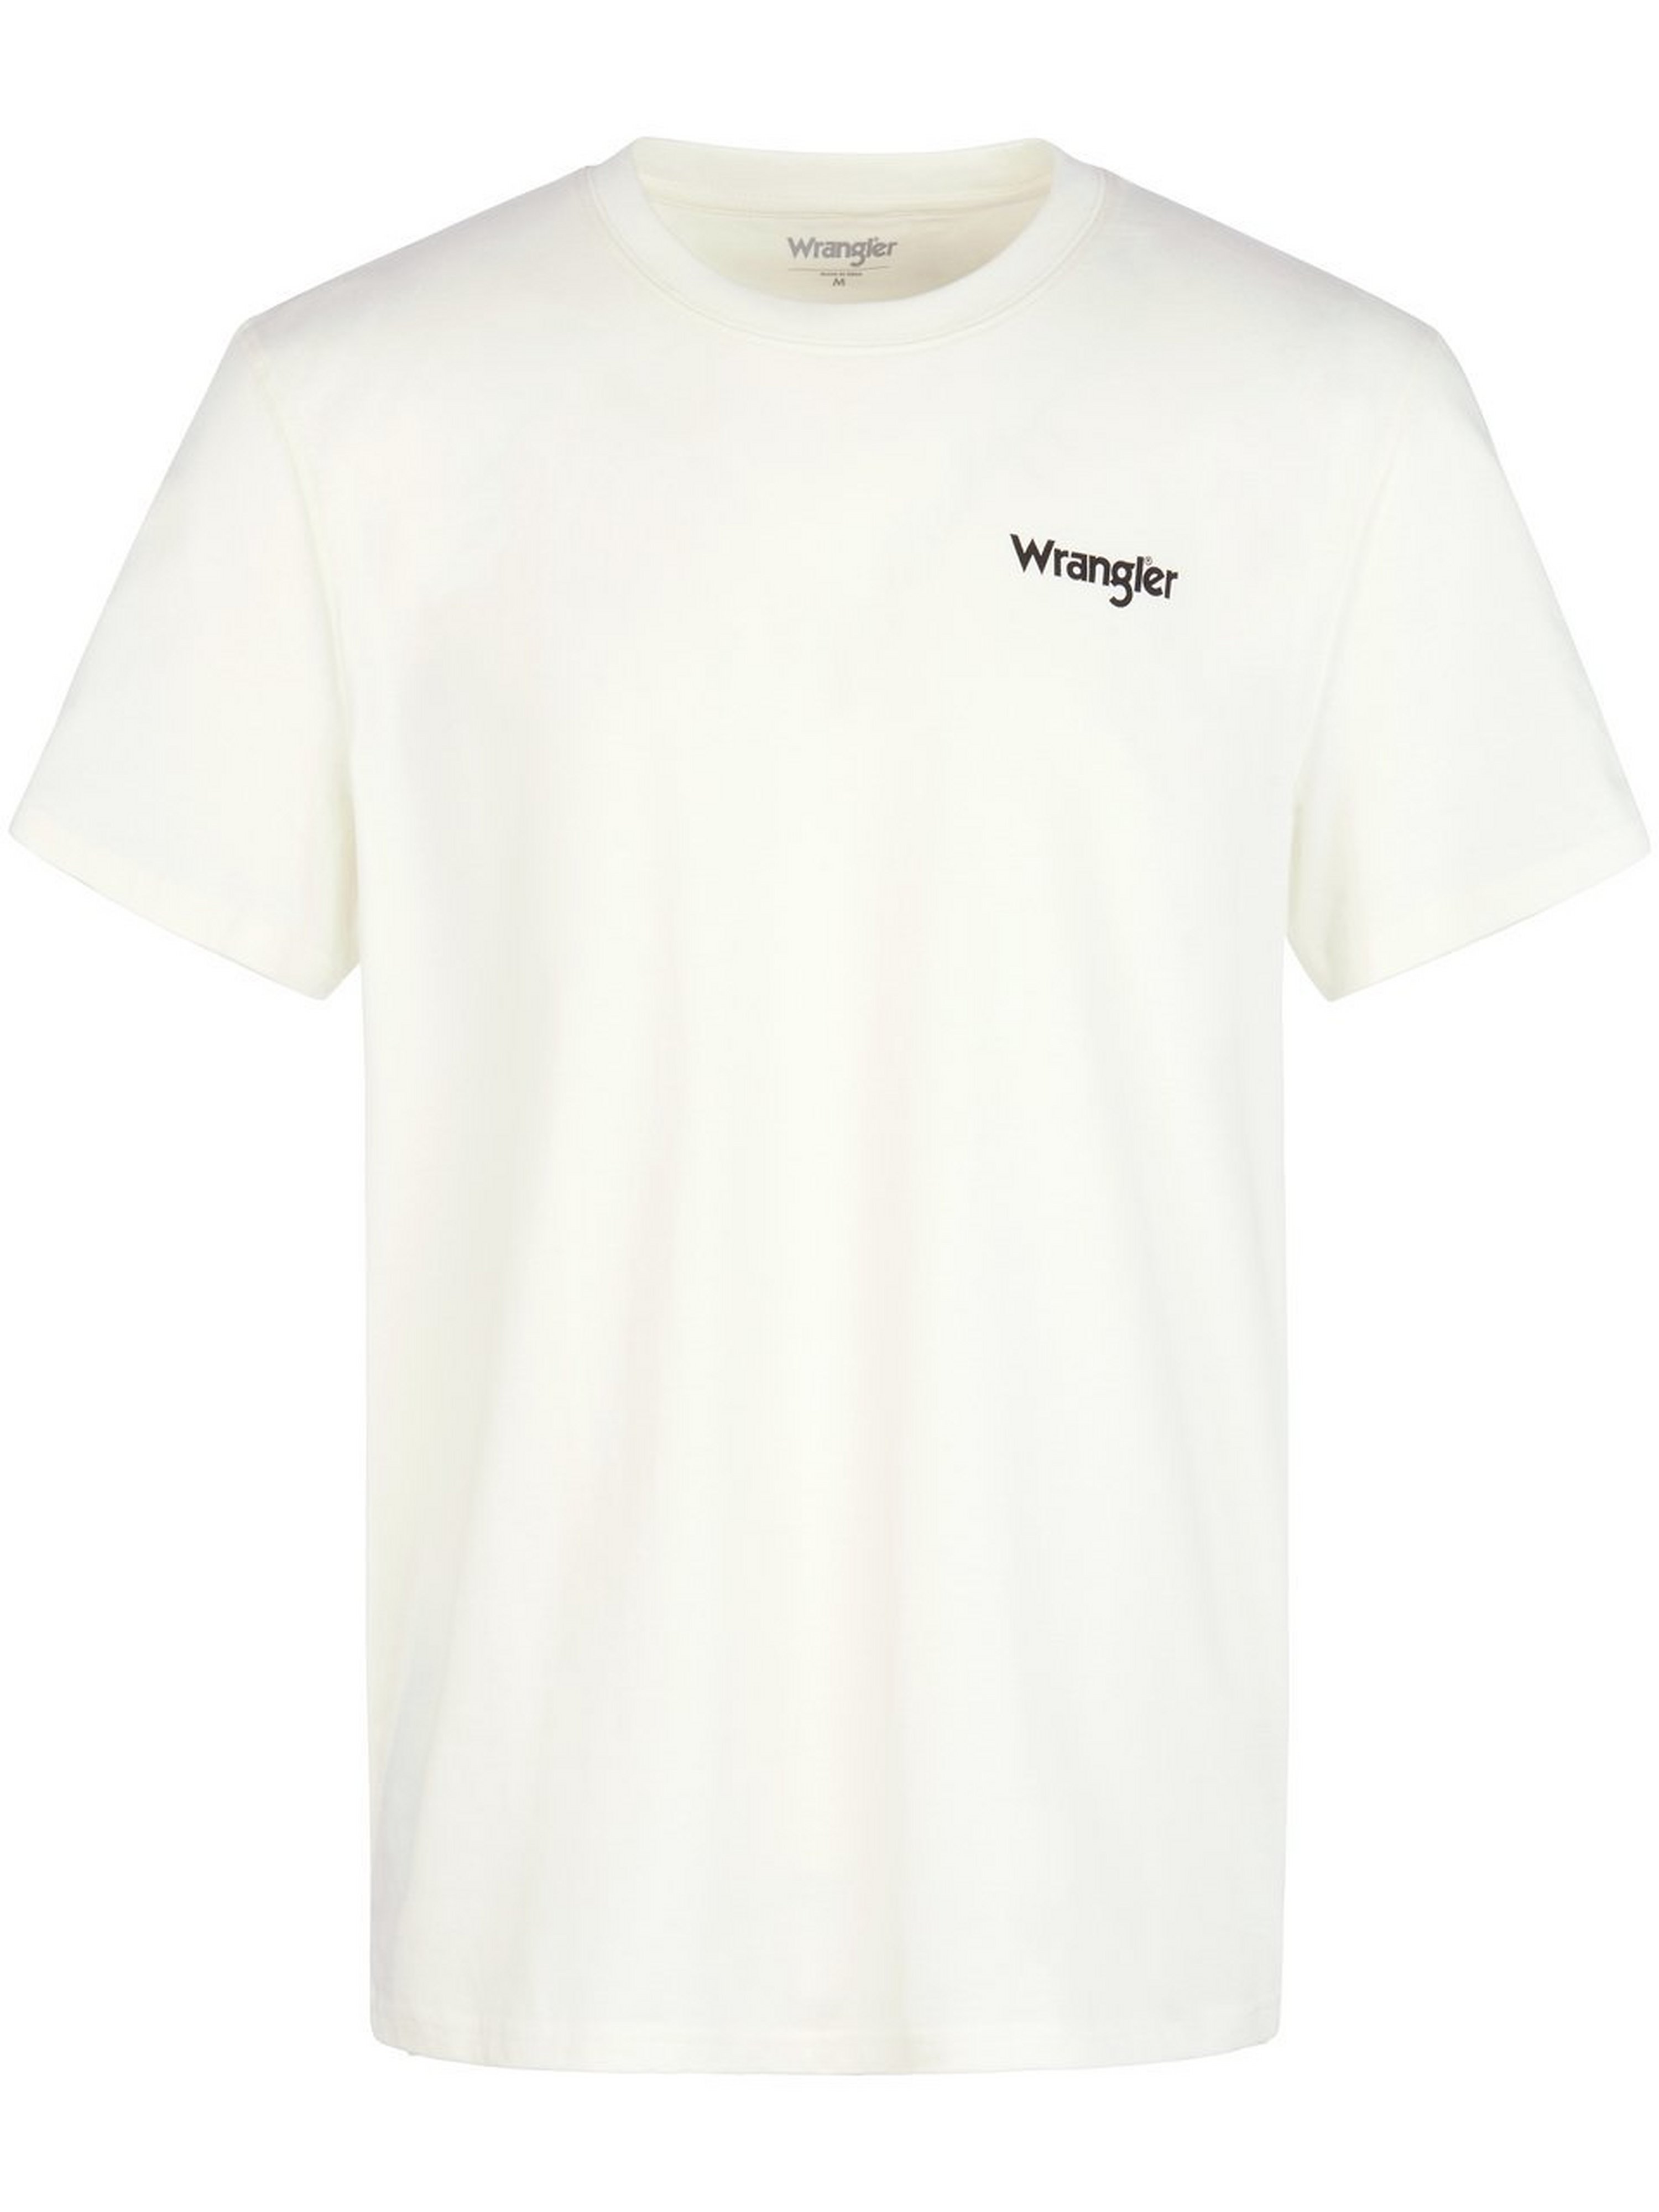 T-Shirt Wrangler weiss Größe: 54